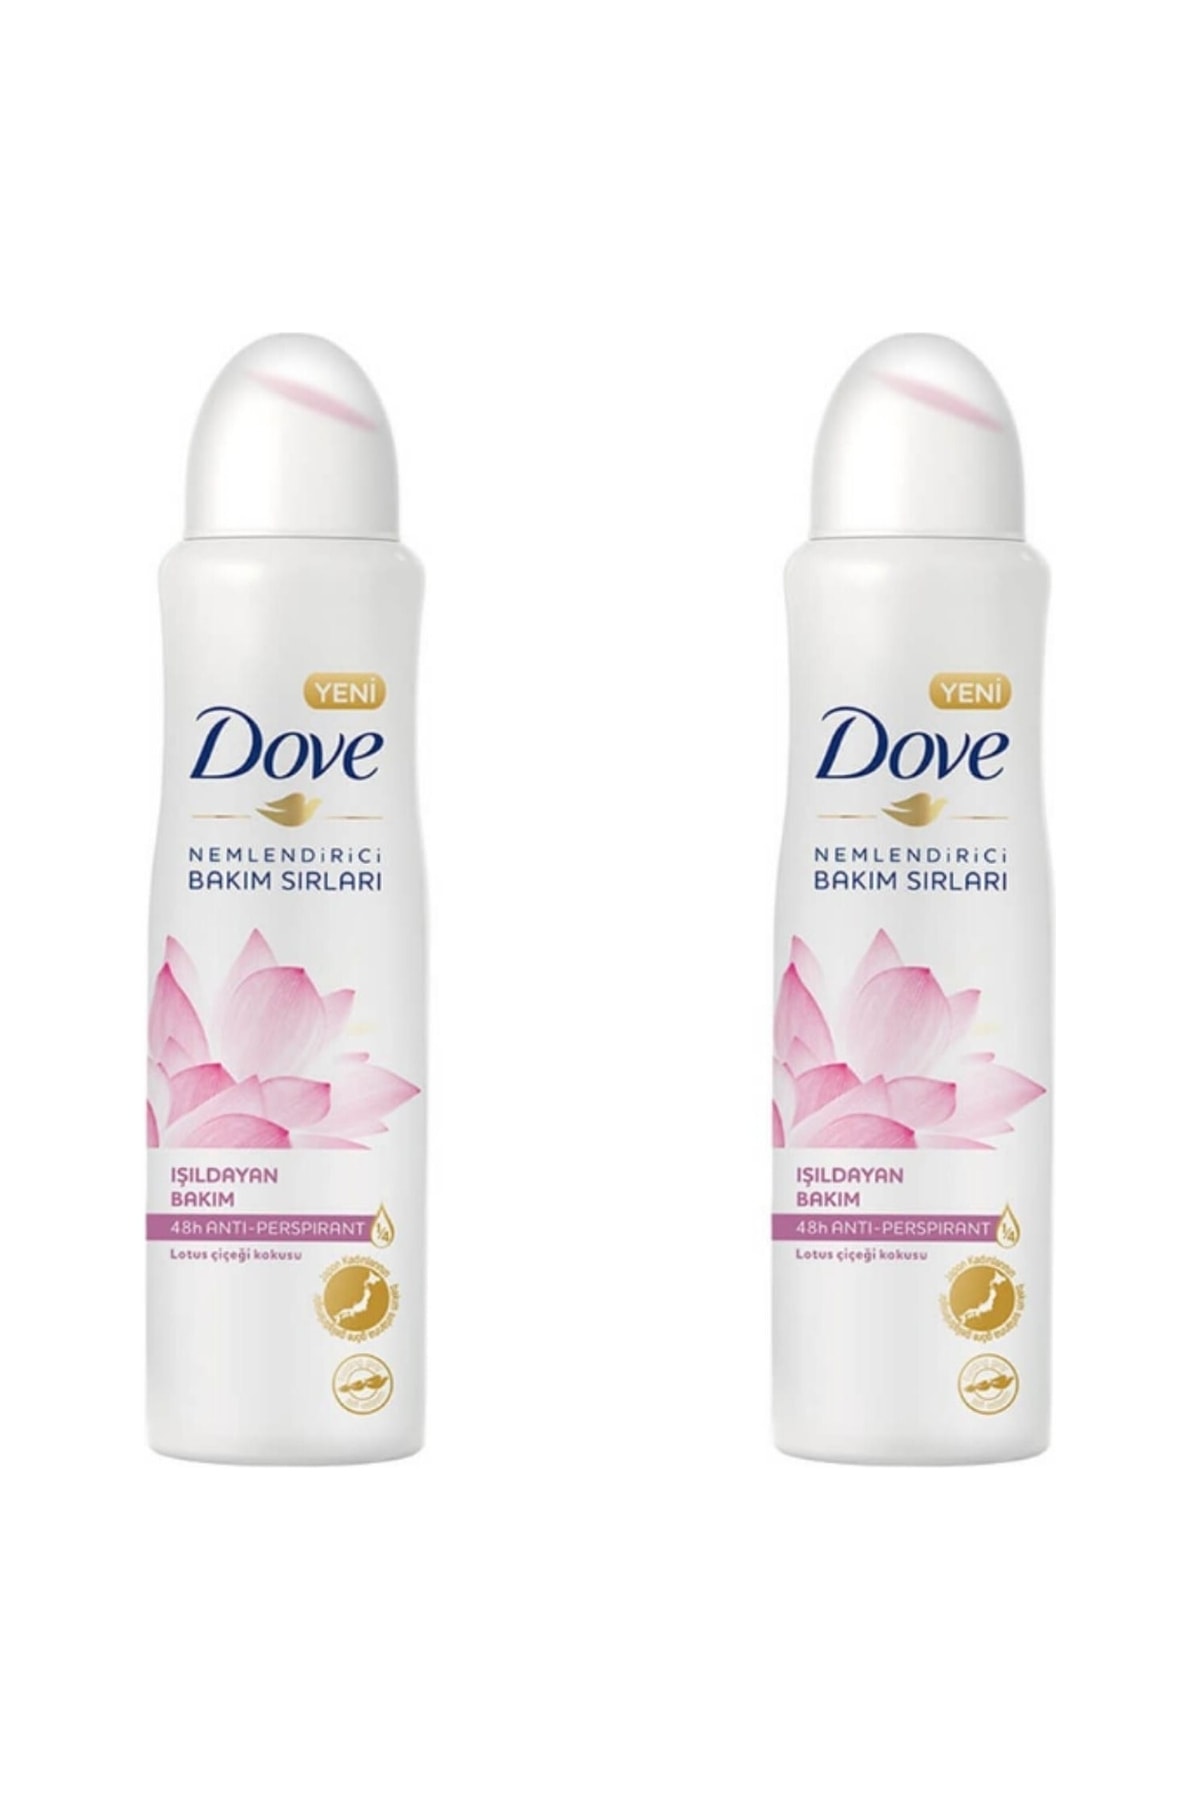 Dove Kadın Deodorant Işıldayan Bakım Lotus Çiçeği Kokusu 150 Ml - 2'li Avantaj Paketi